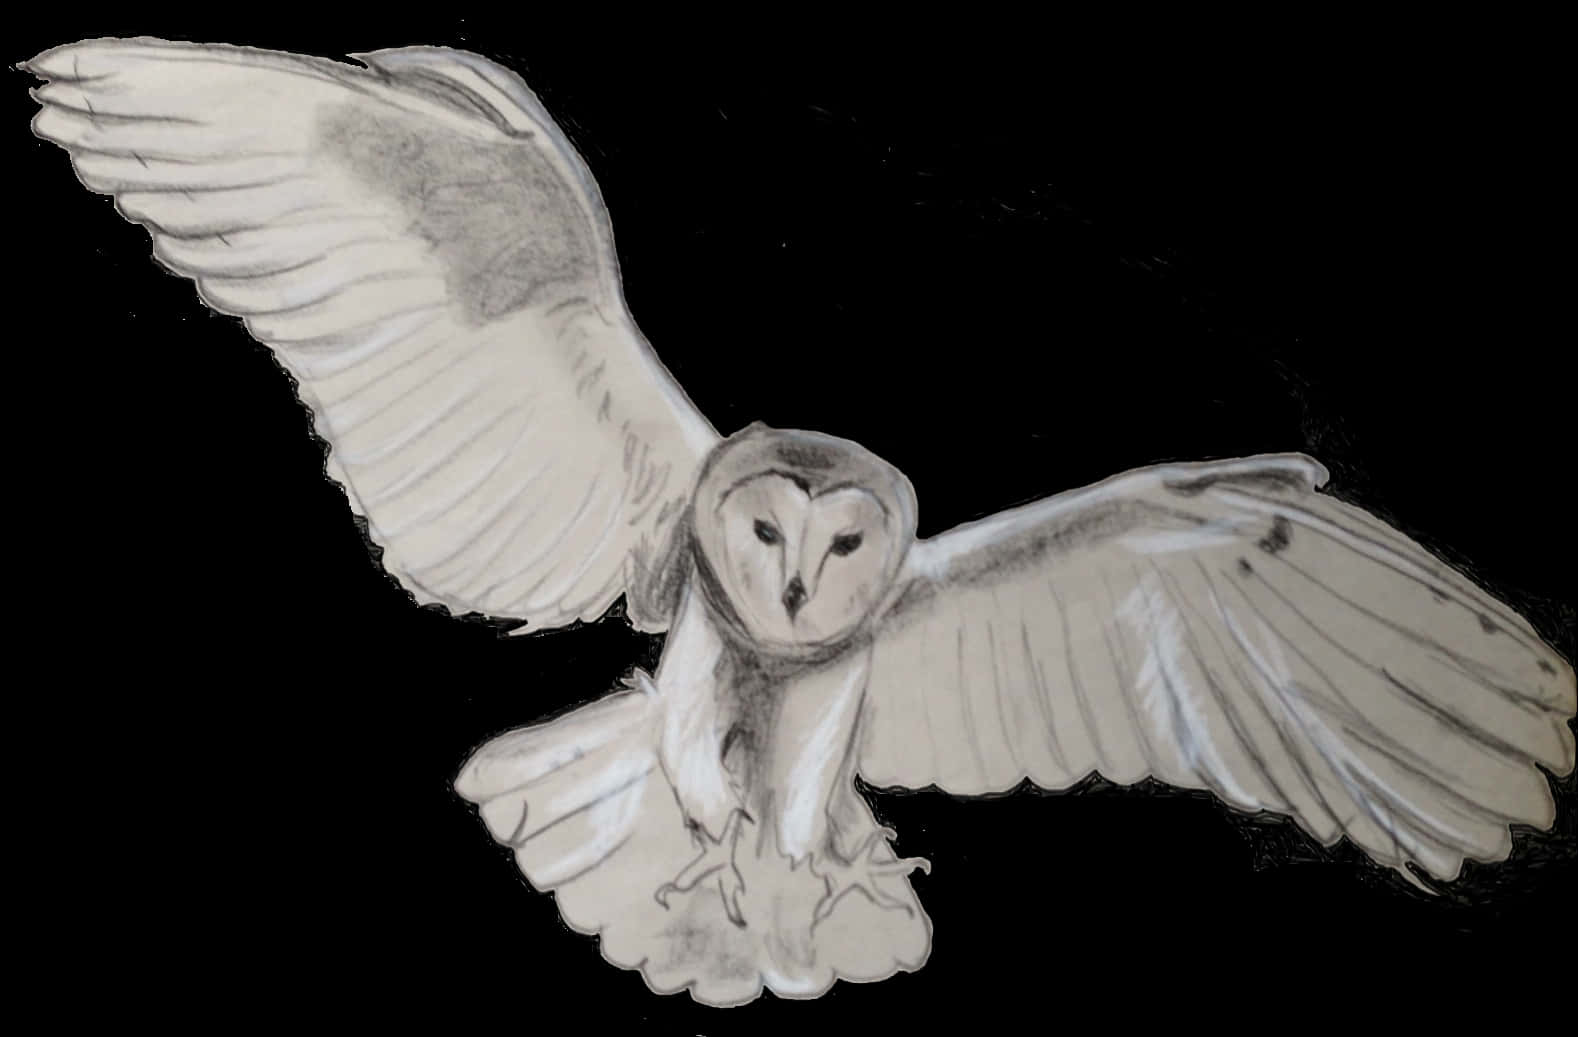 Barn Owl In Flight